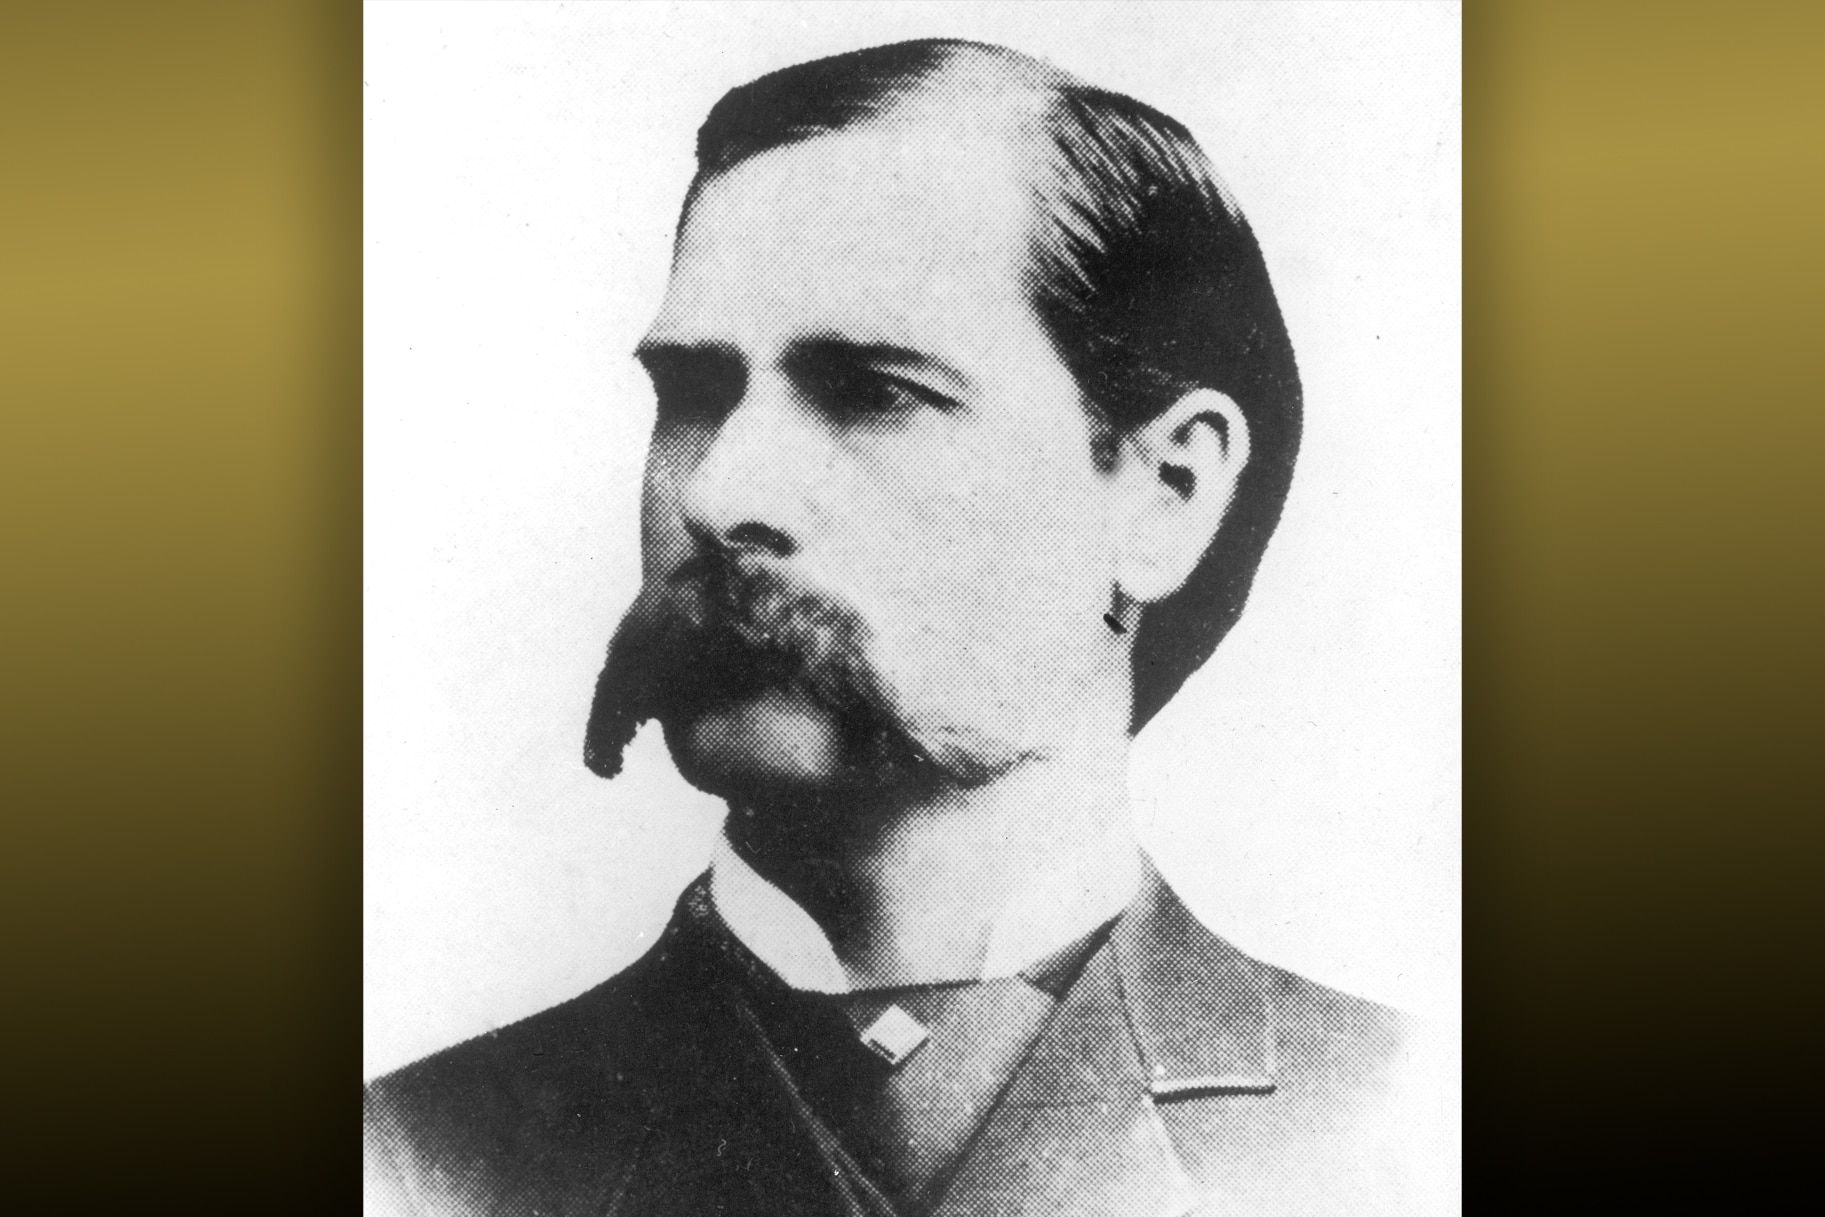 A portrait of Wyatt Earp